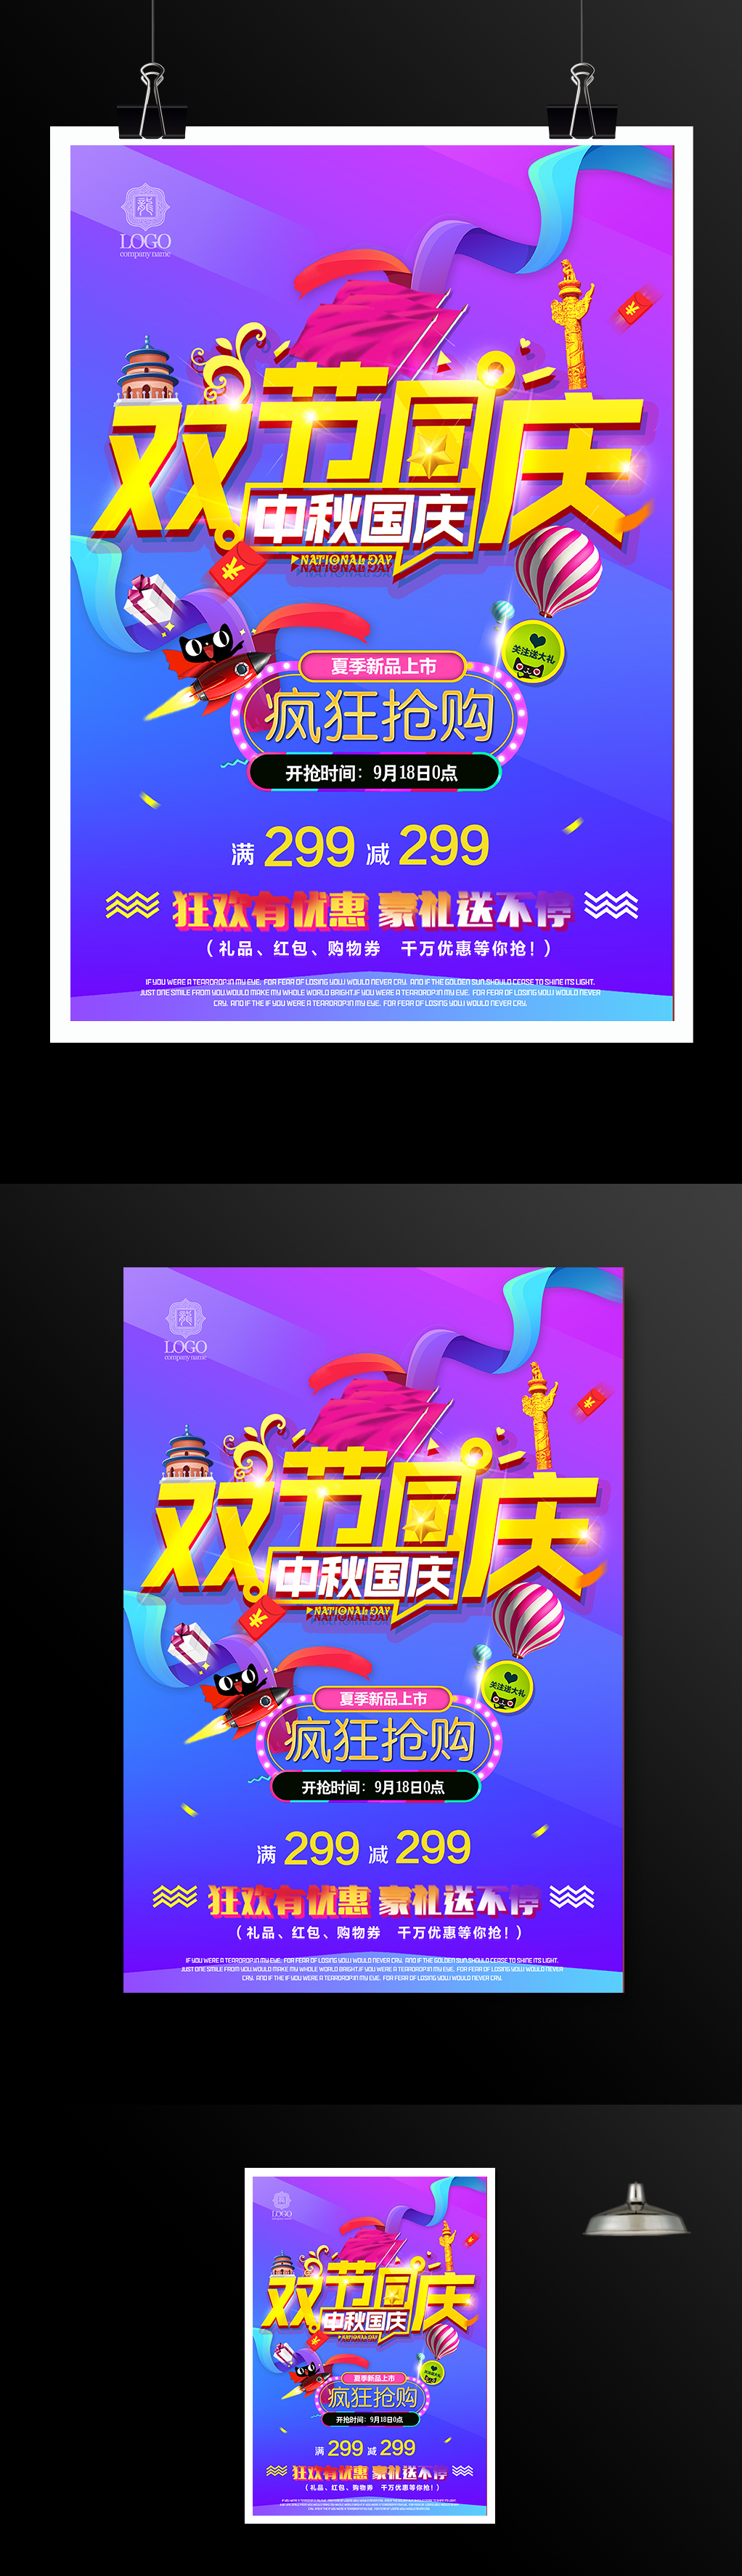 中秋国庆双节同庆促销宣传海报模板